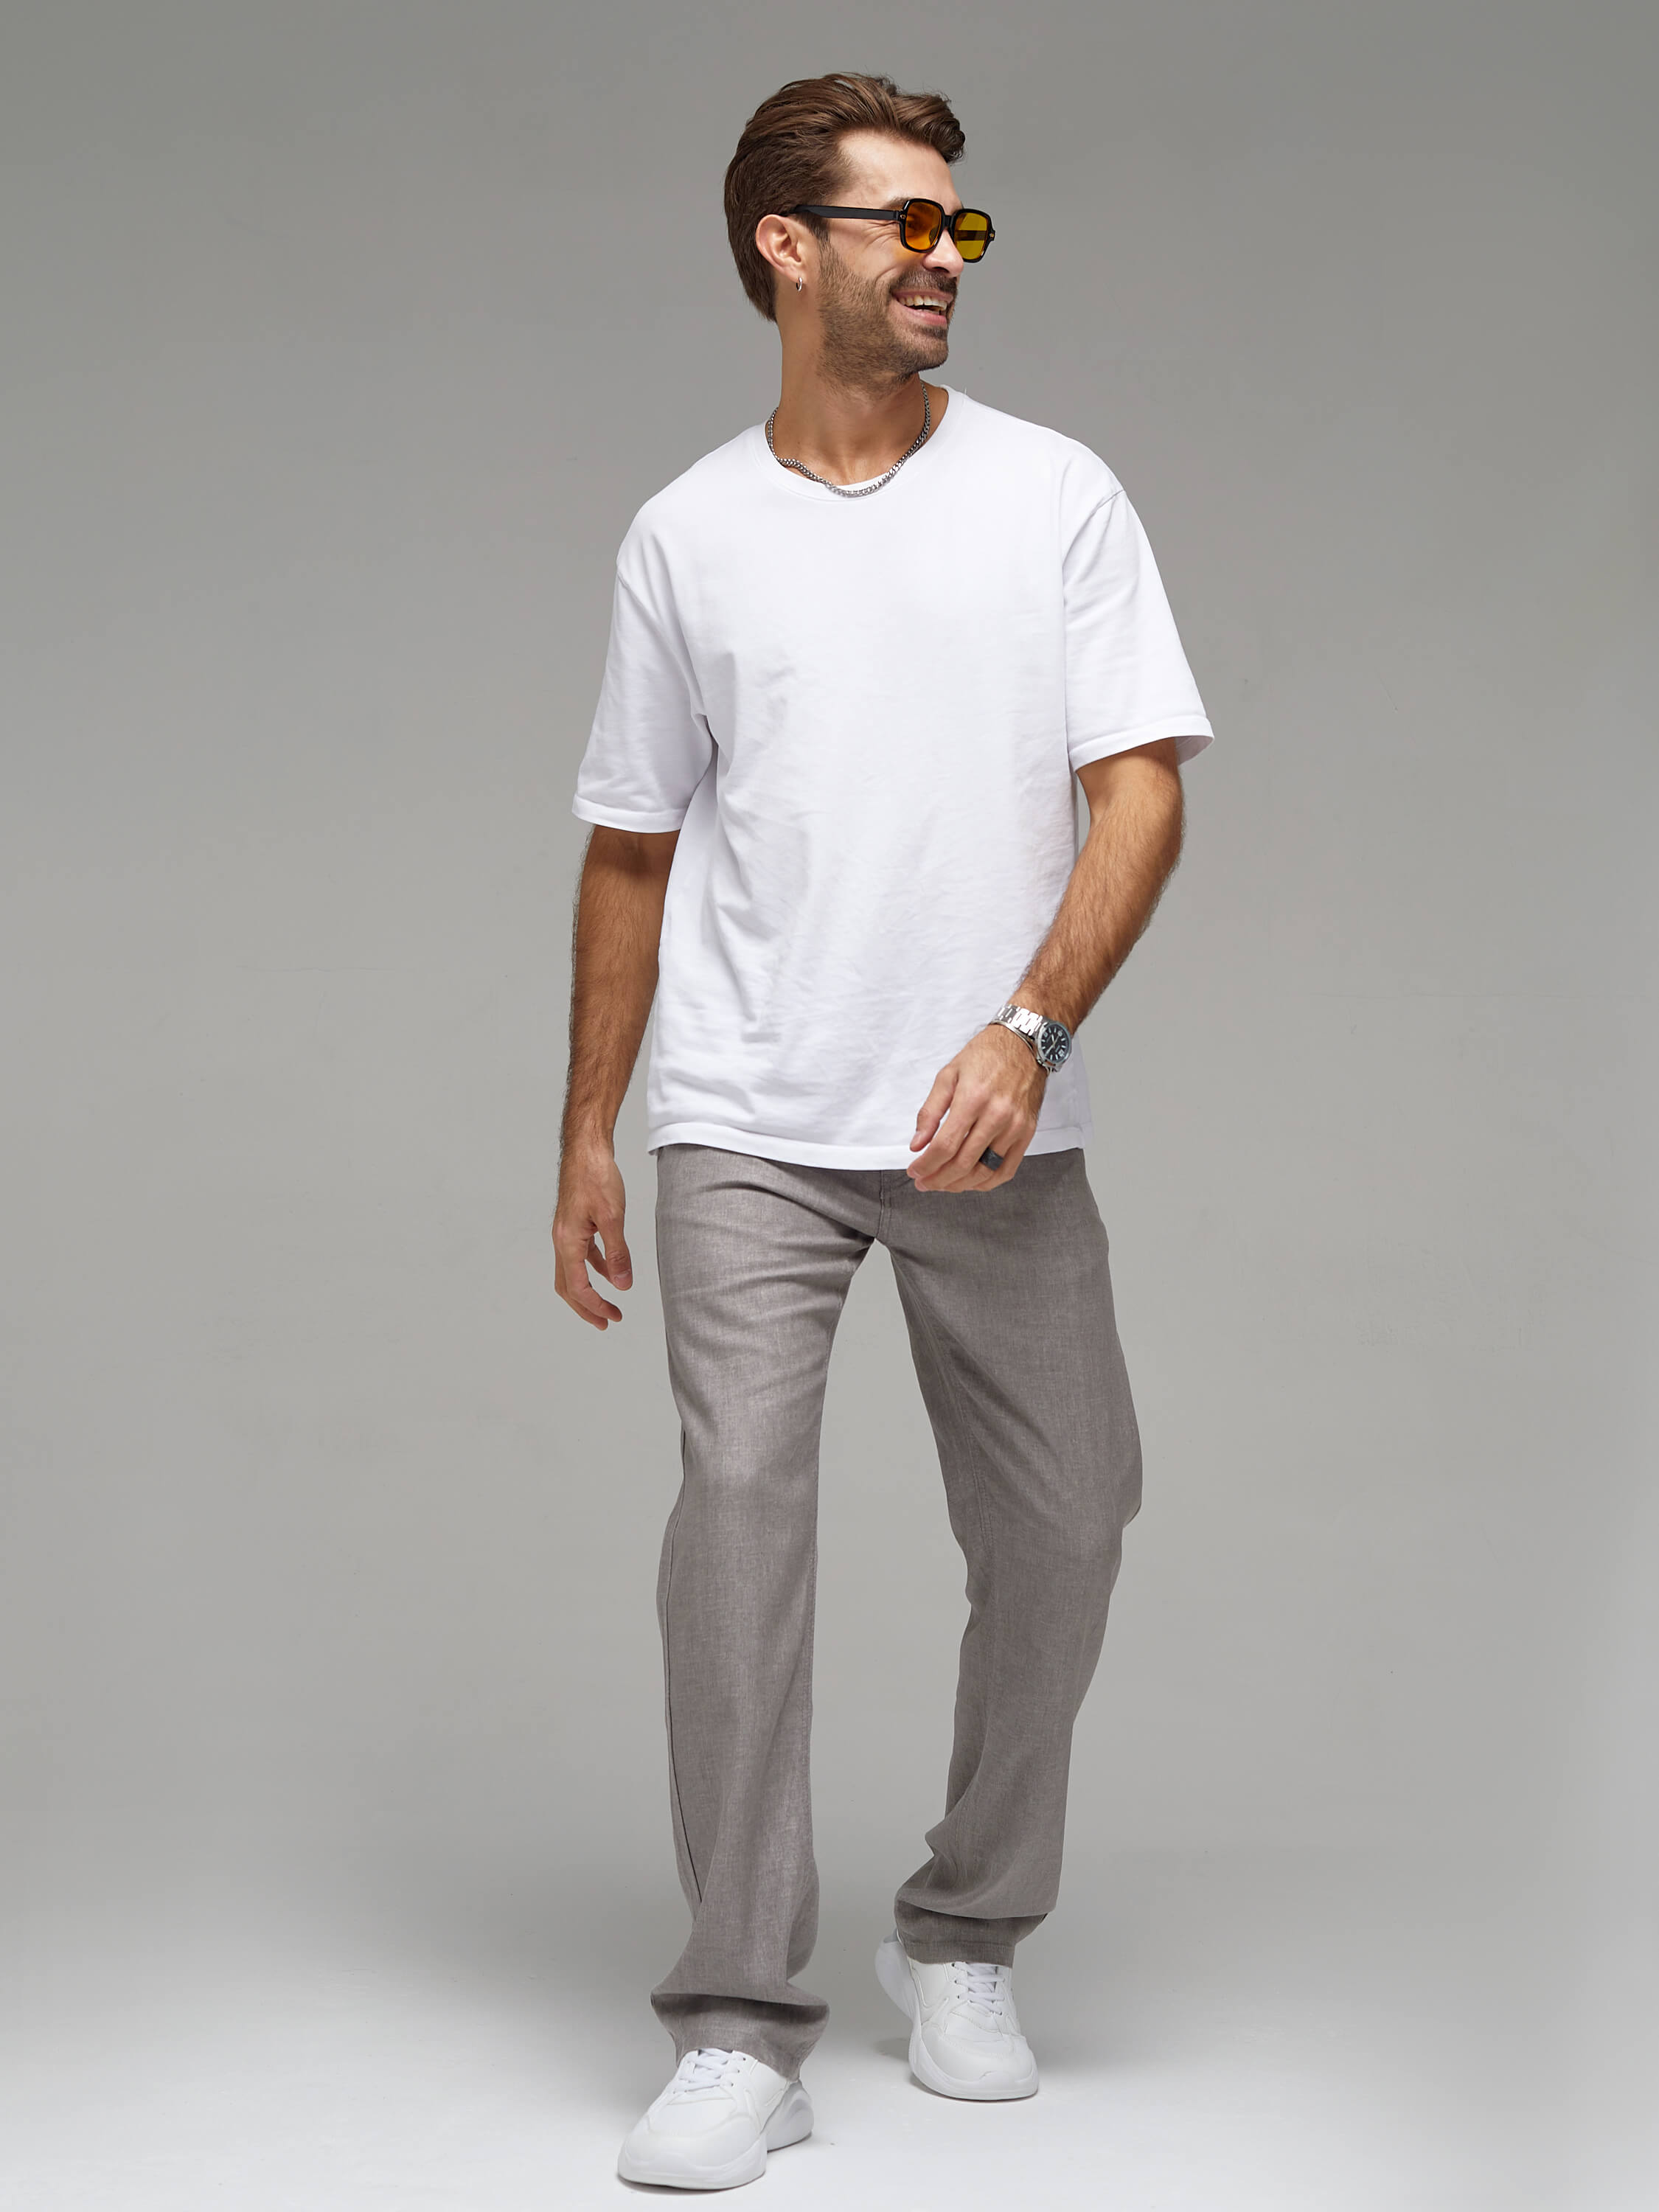 Съемка брюк на мужчине для маркетплейса 